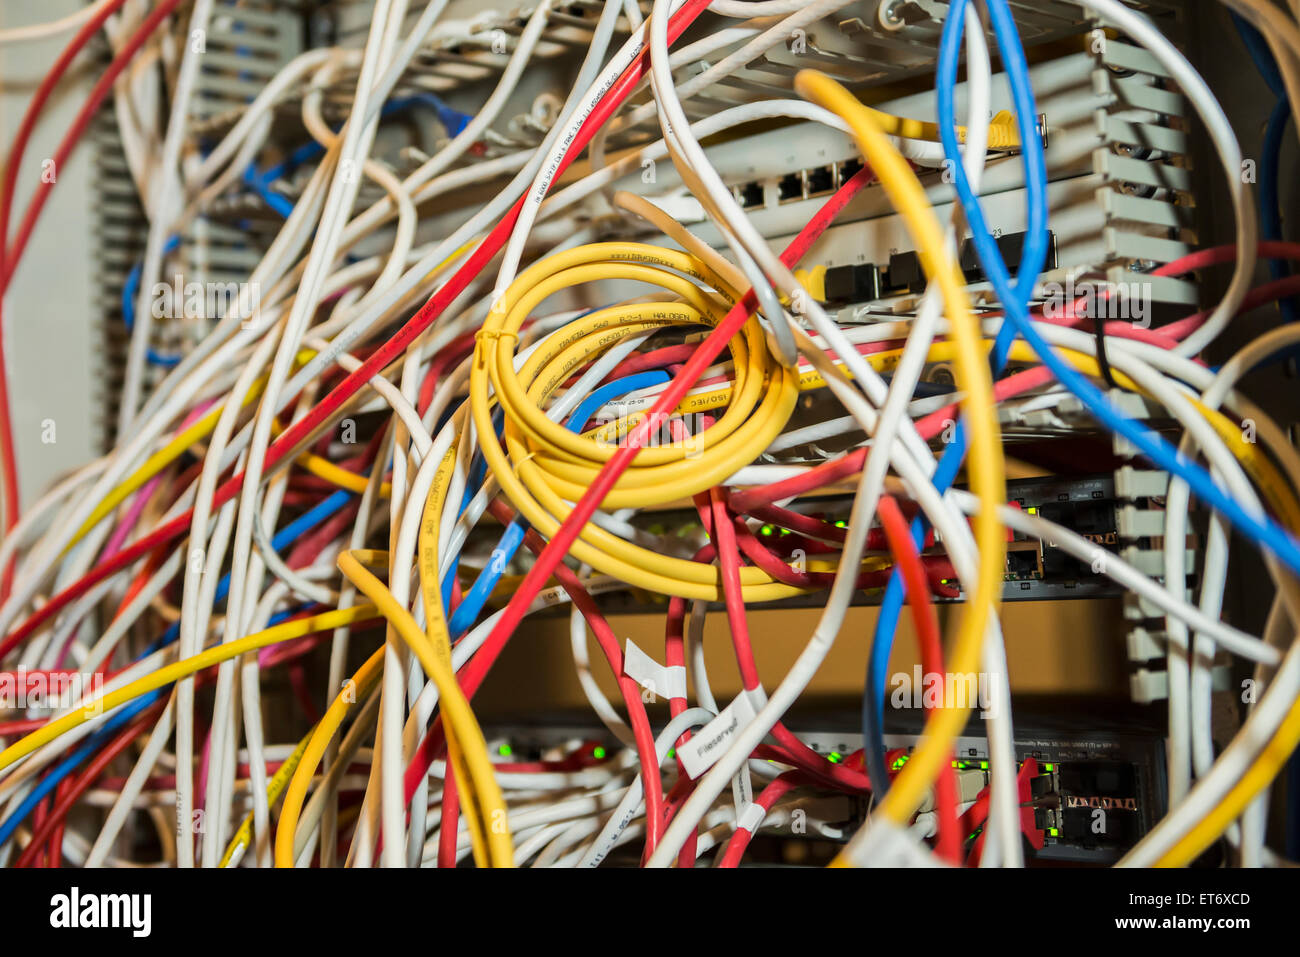 Ethernet-LAN-Kabel verbunden mit Netzwerk-Router, Munich, Bavaria, Germany  Stockfotografie - Alamy